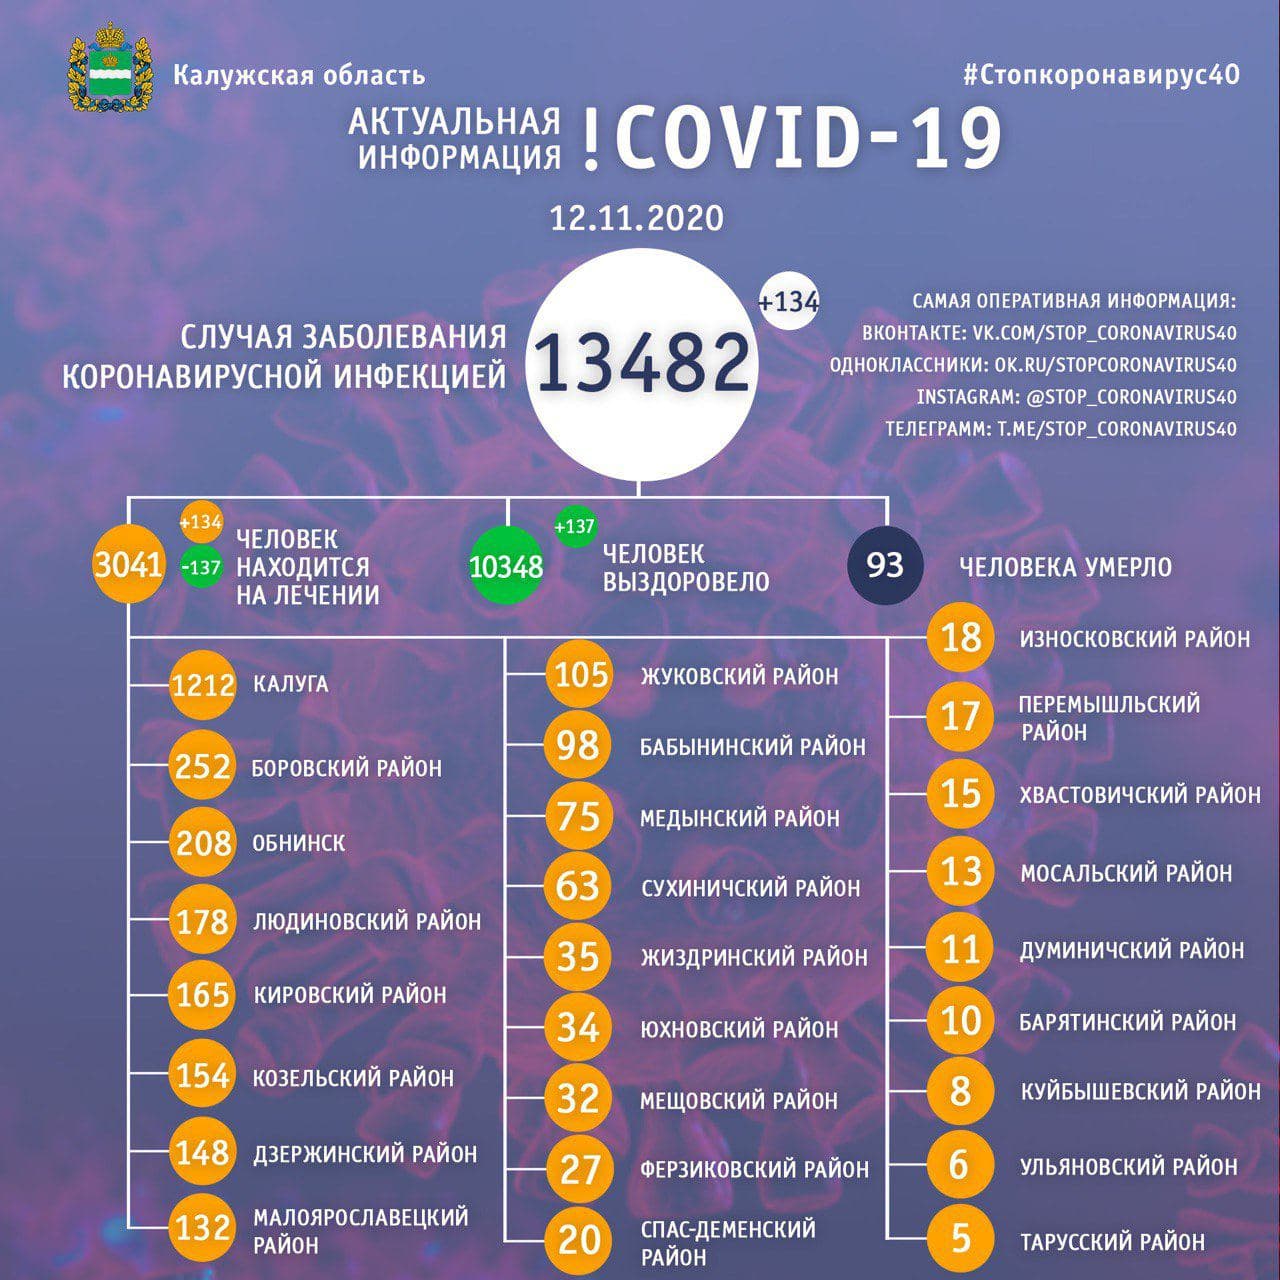 Официальная статистика по коронавирусу в Калужской области на 12 ноября 2020 года.